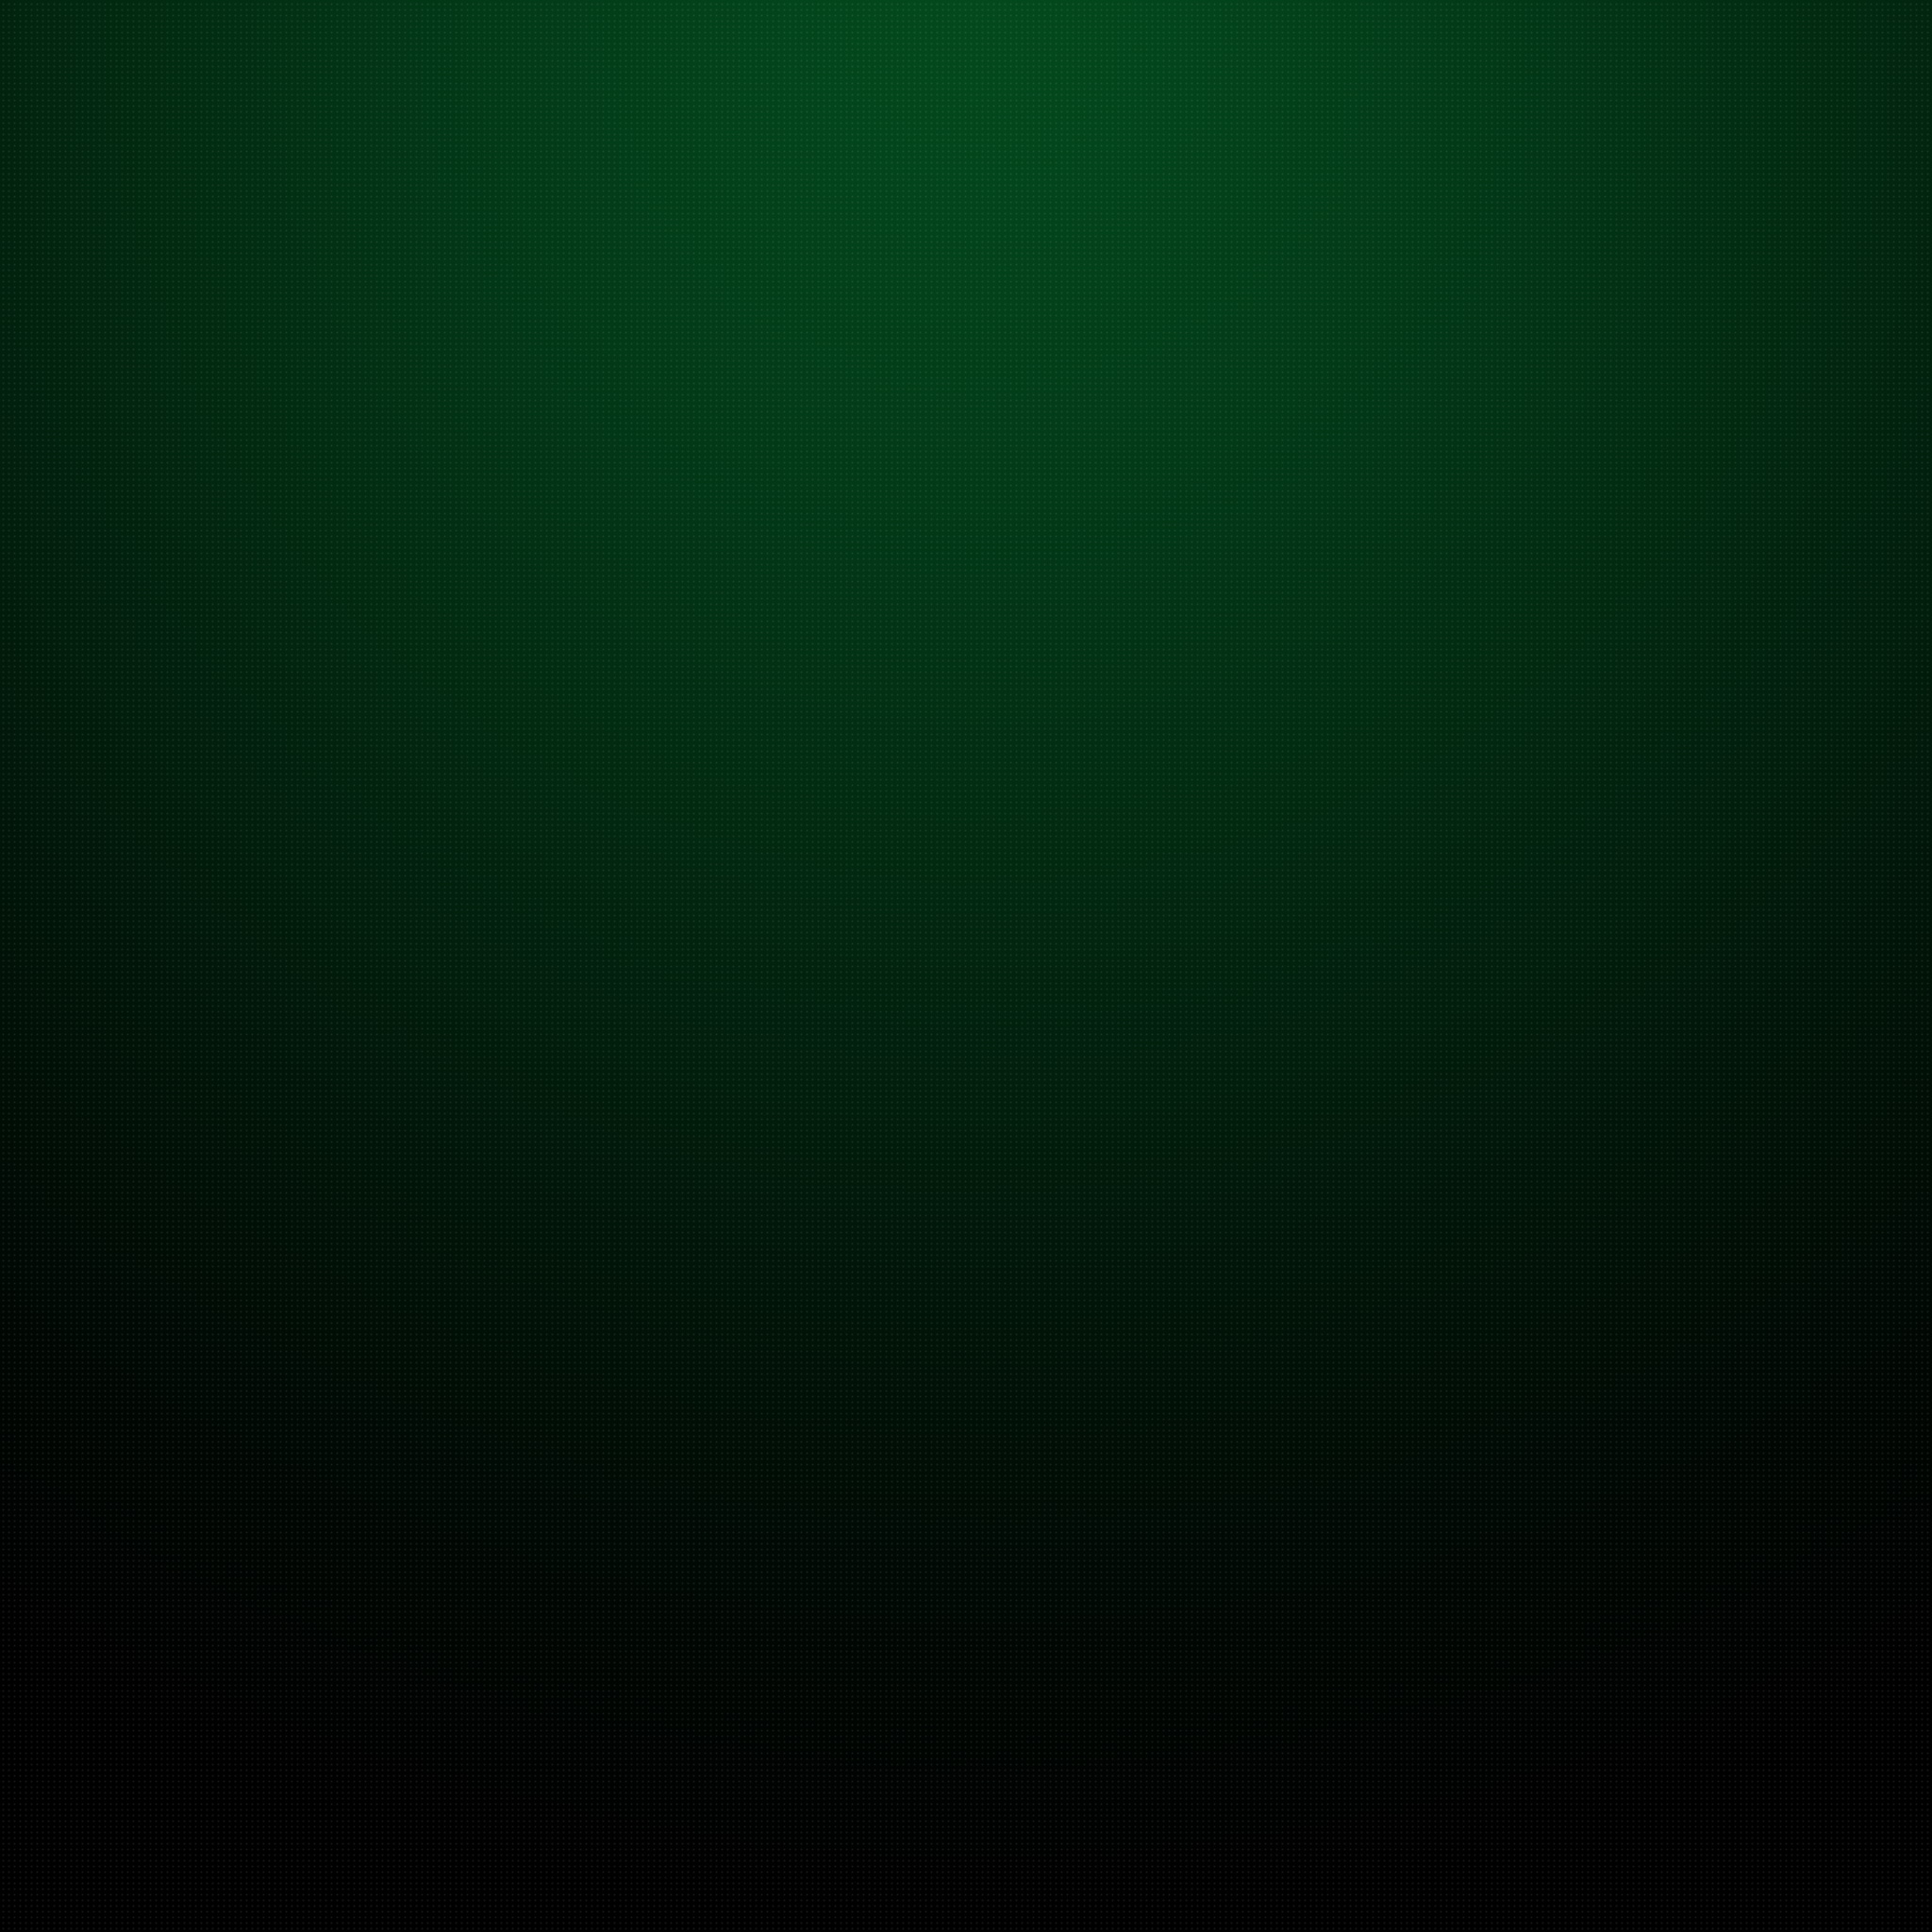 Dark Green Gradient iPad Air Wallpaper HD Retina